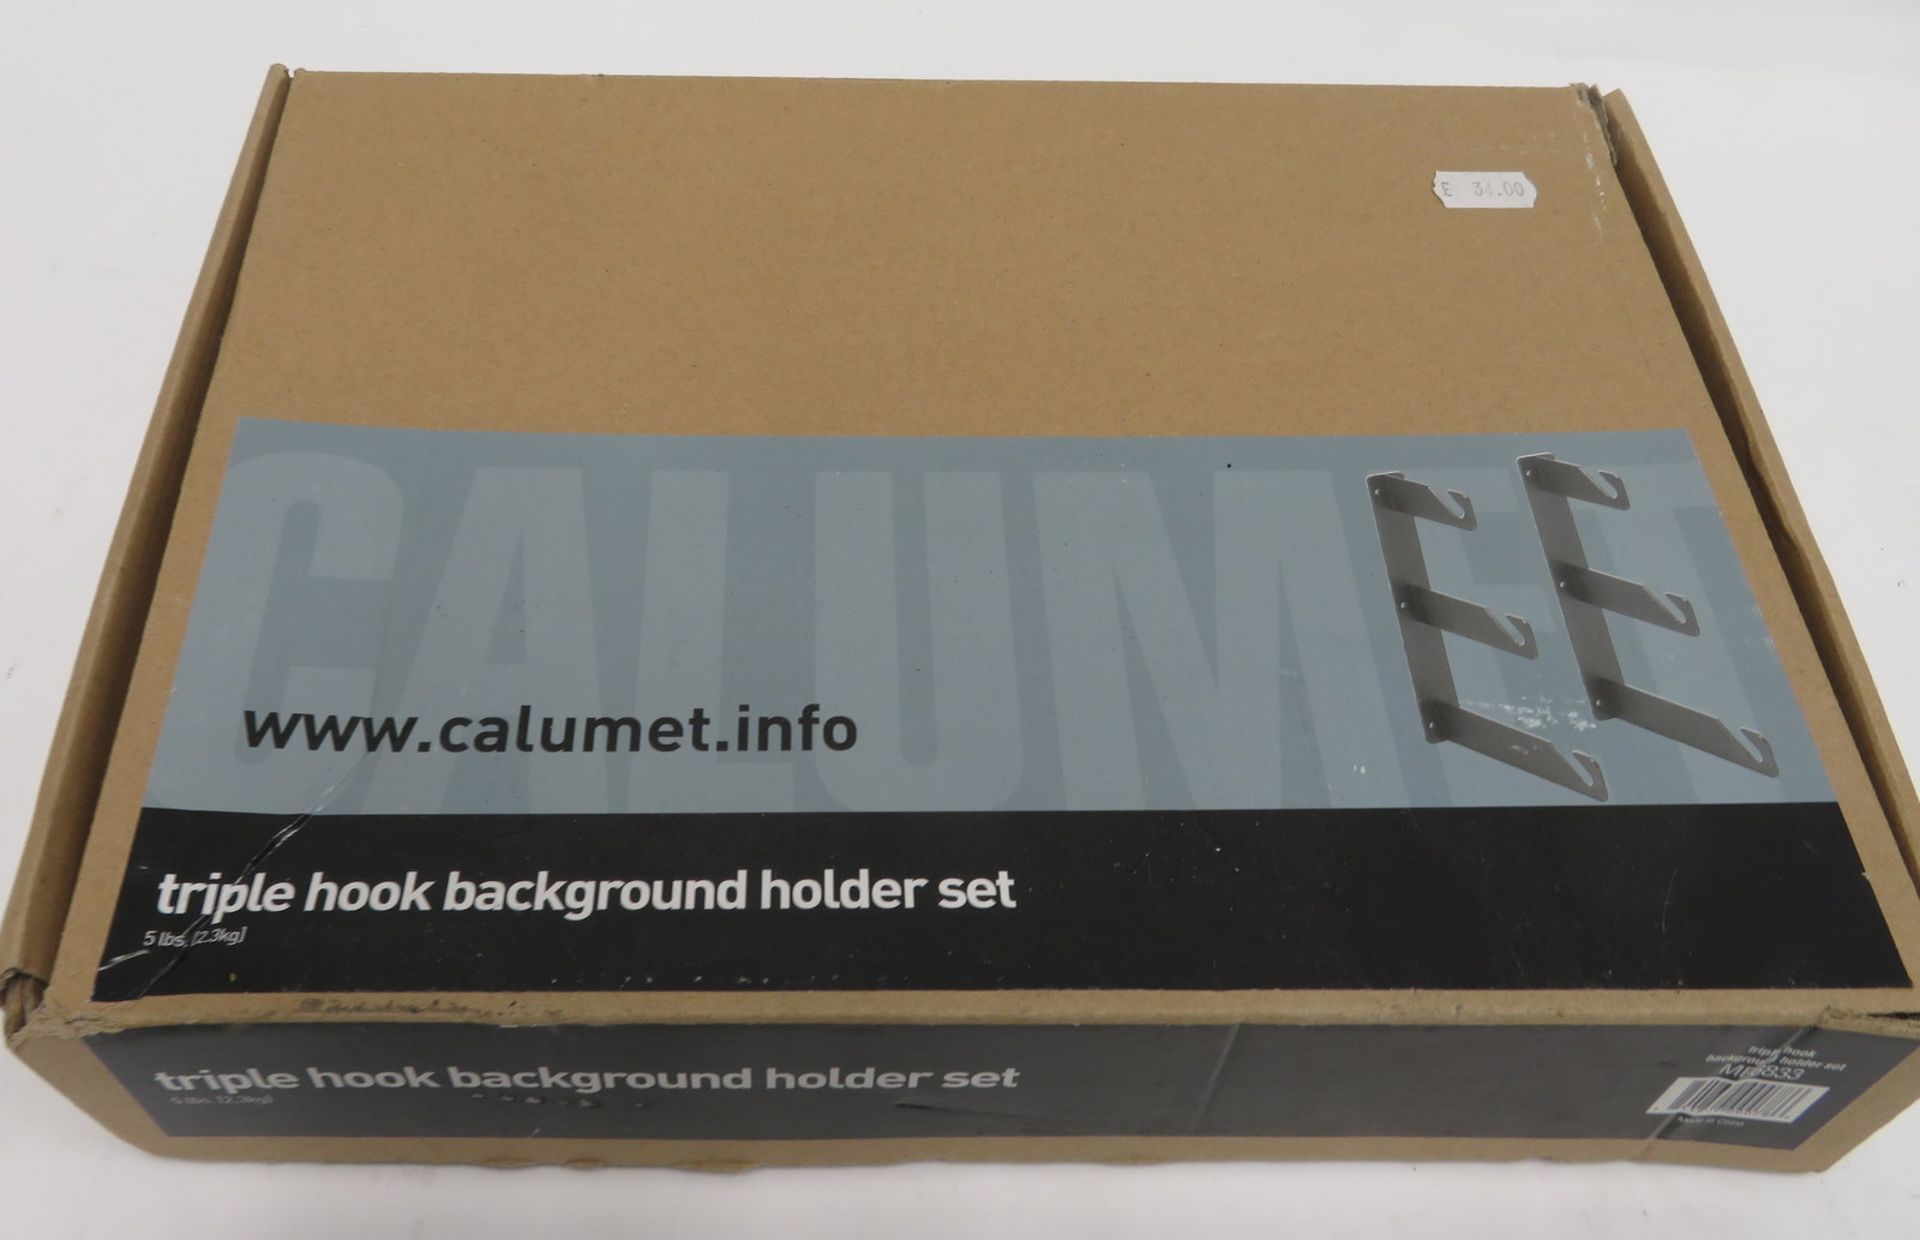 Calumet triple hook background holder set, unused in box